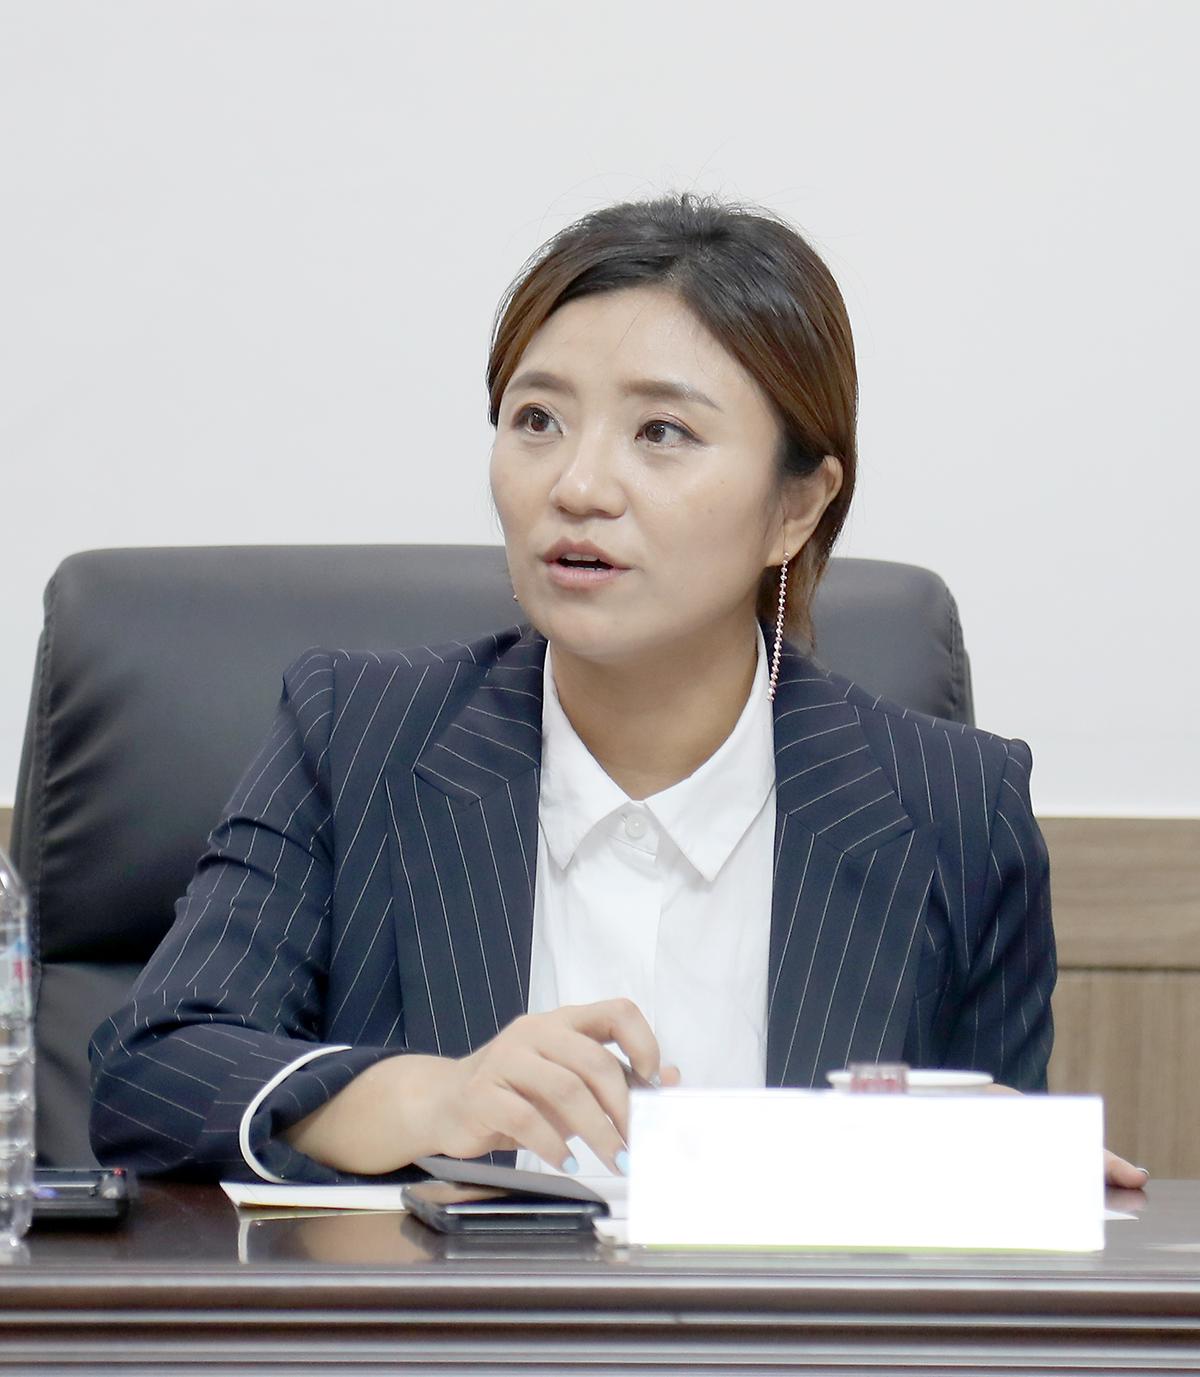 김소연 의원, '청년과 함께하는 대전발전 방안 정책토론회' 개최 [ 2019-06-28 ]